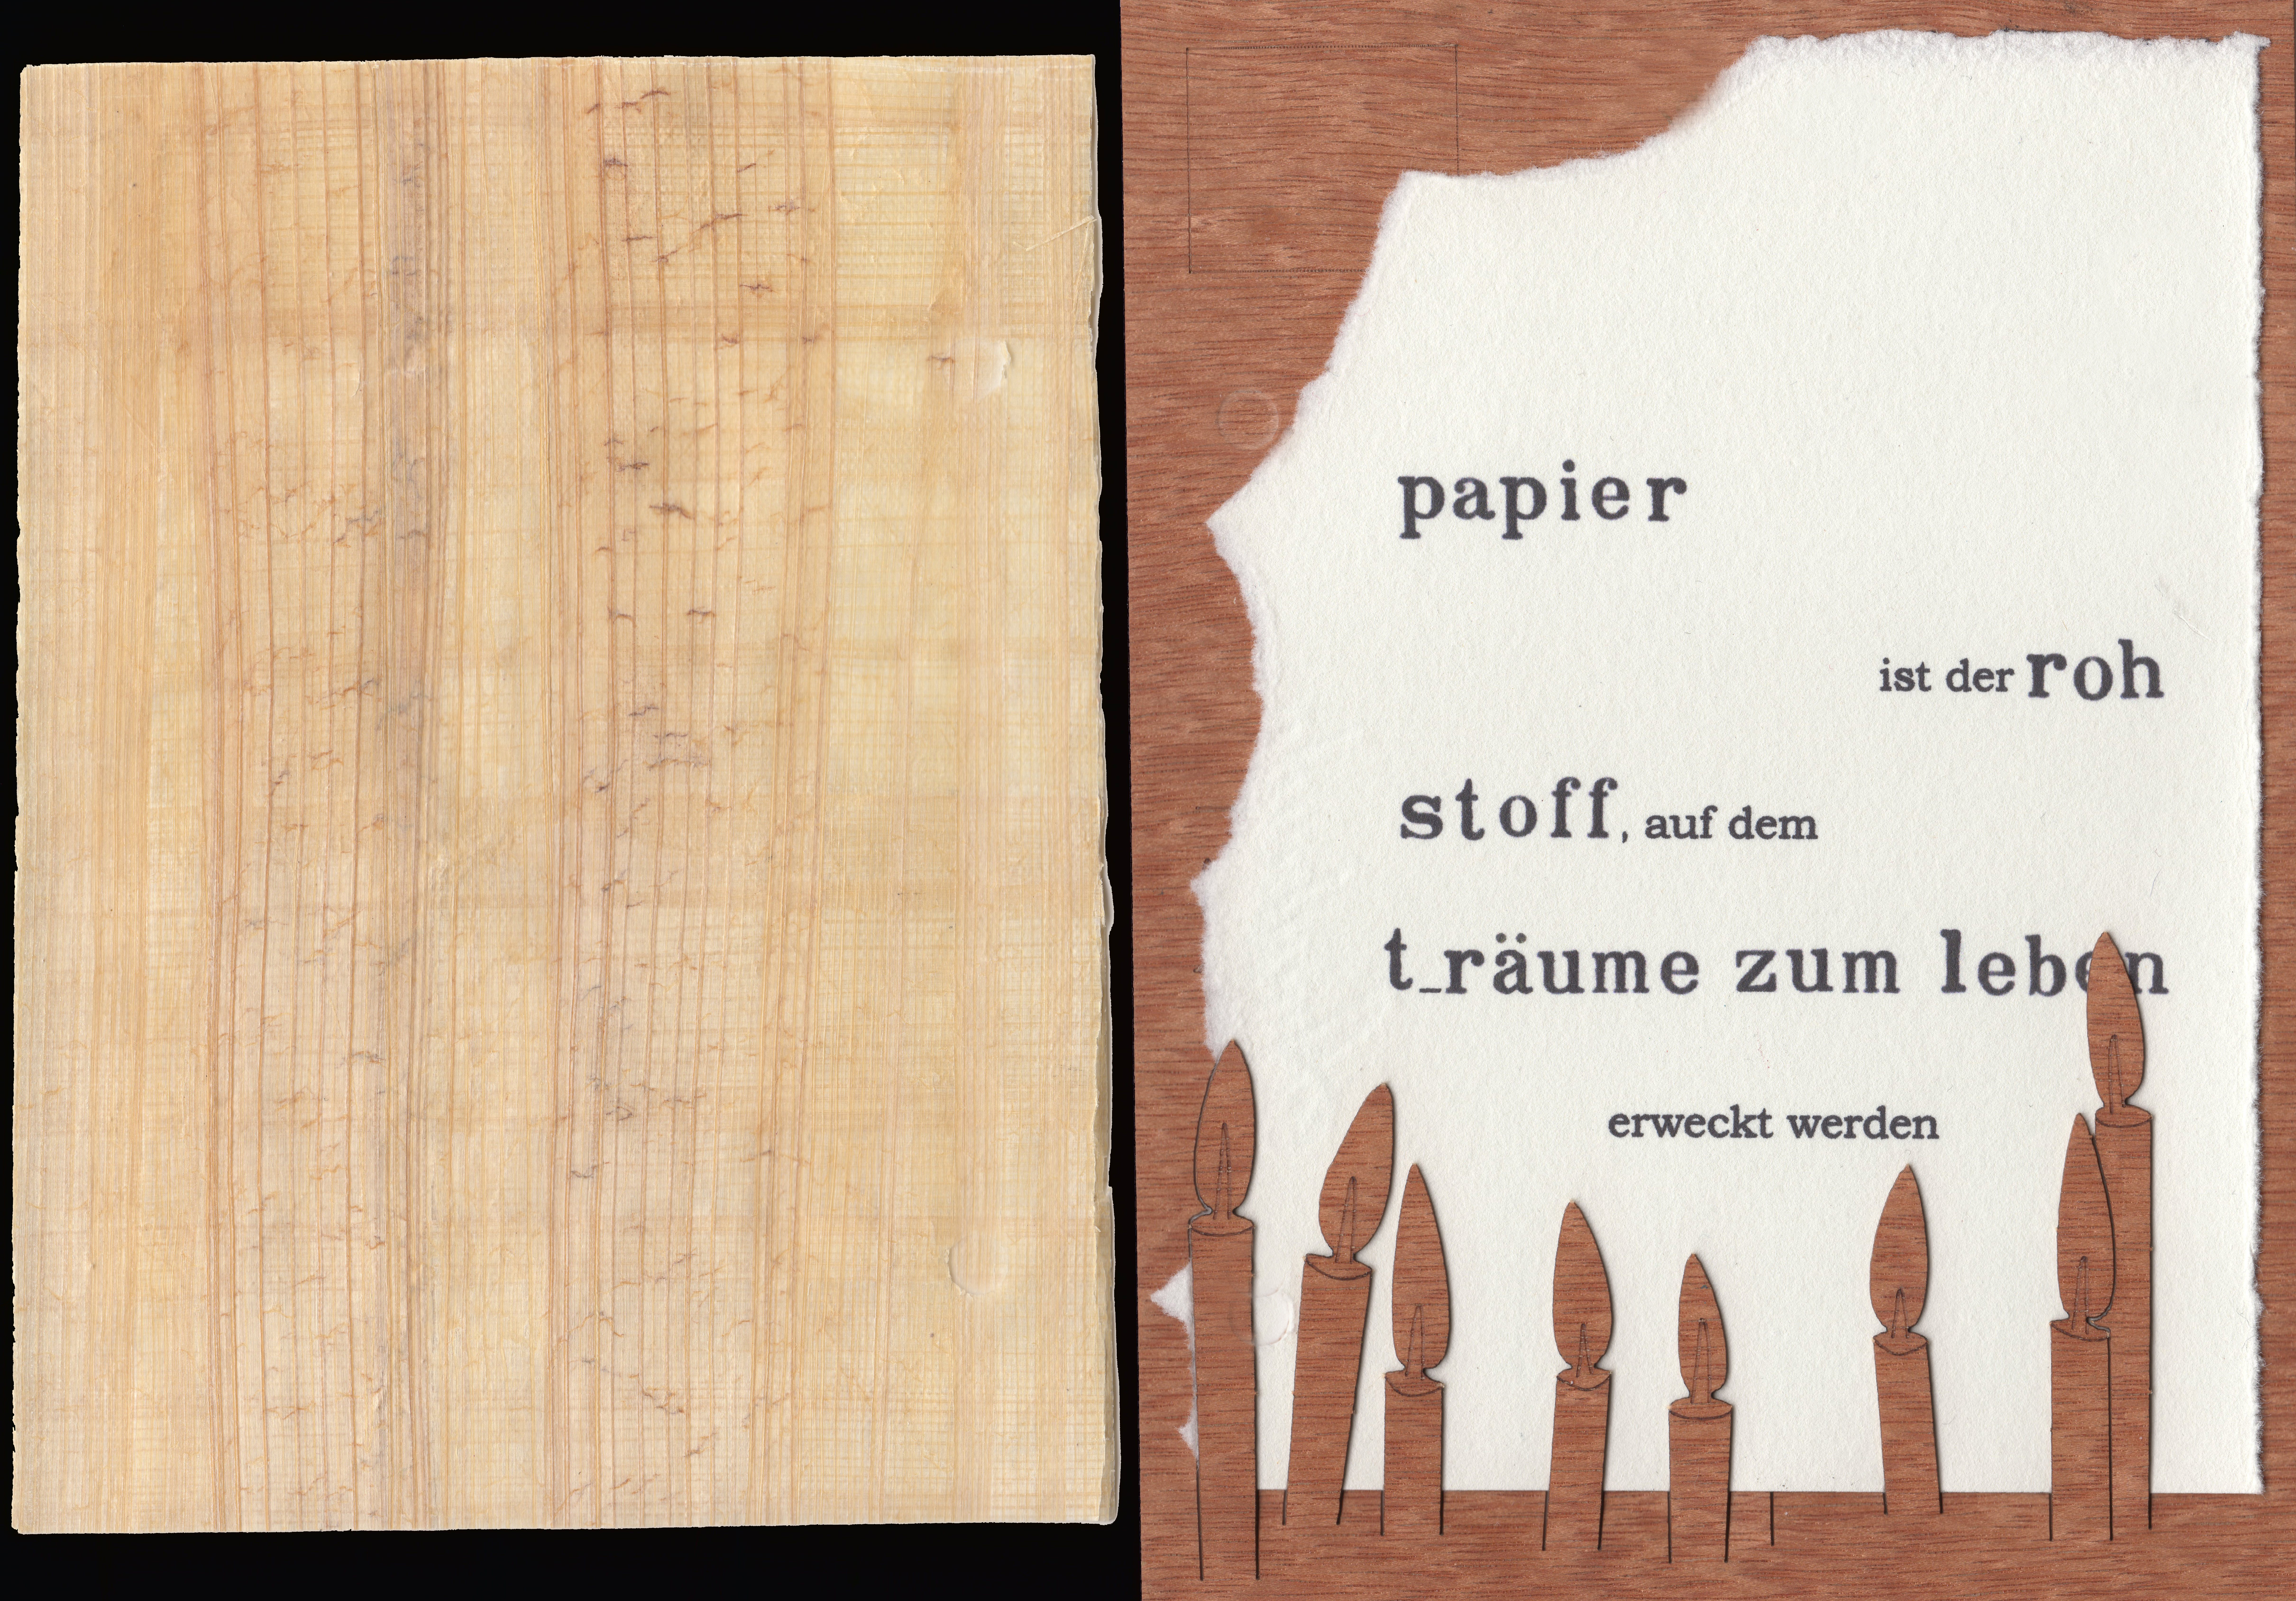 03-Bütten auf Holz mit Papyros-NEU